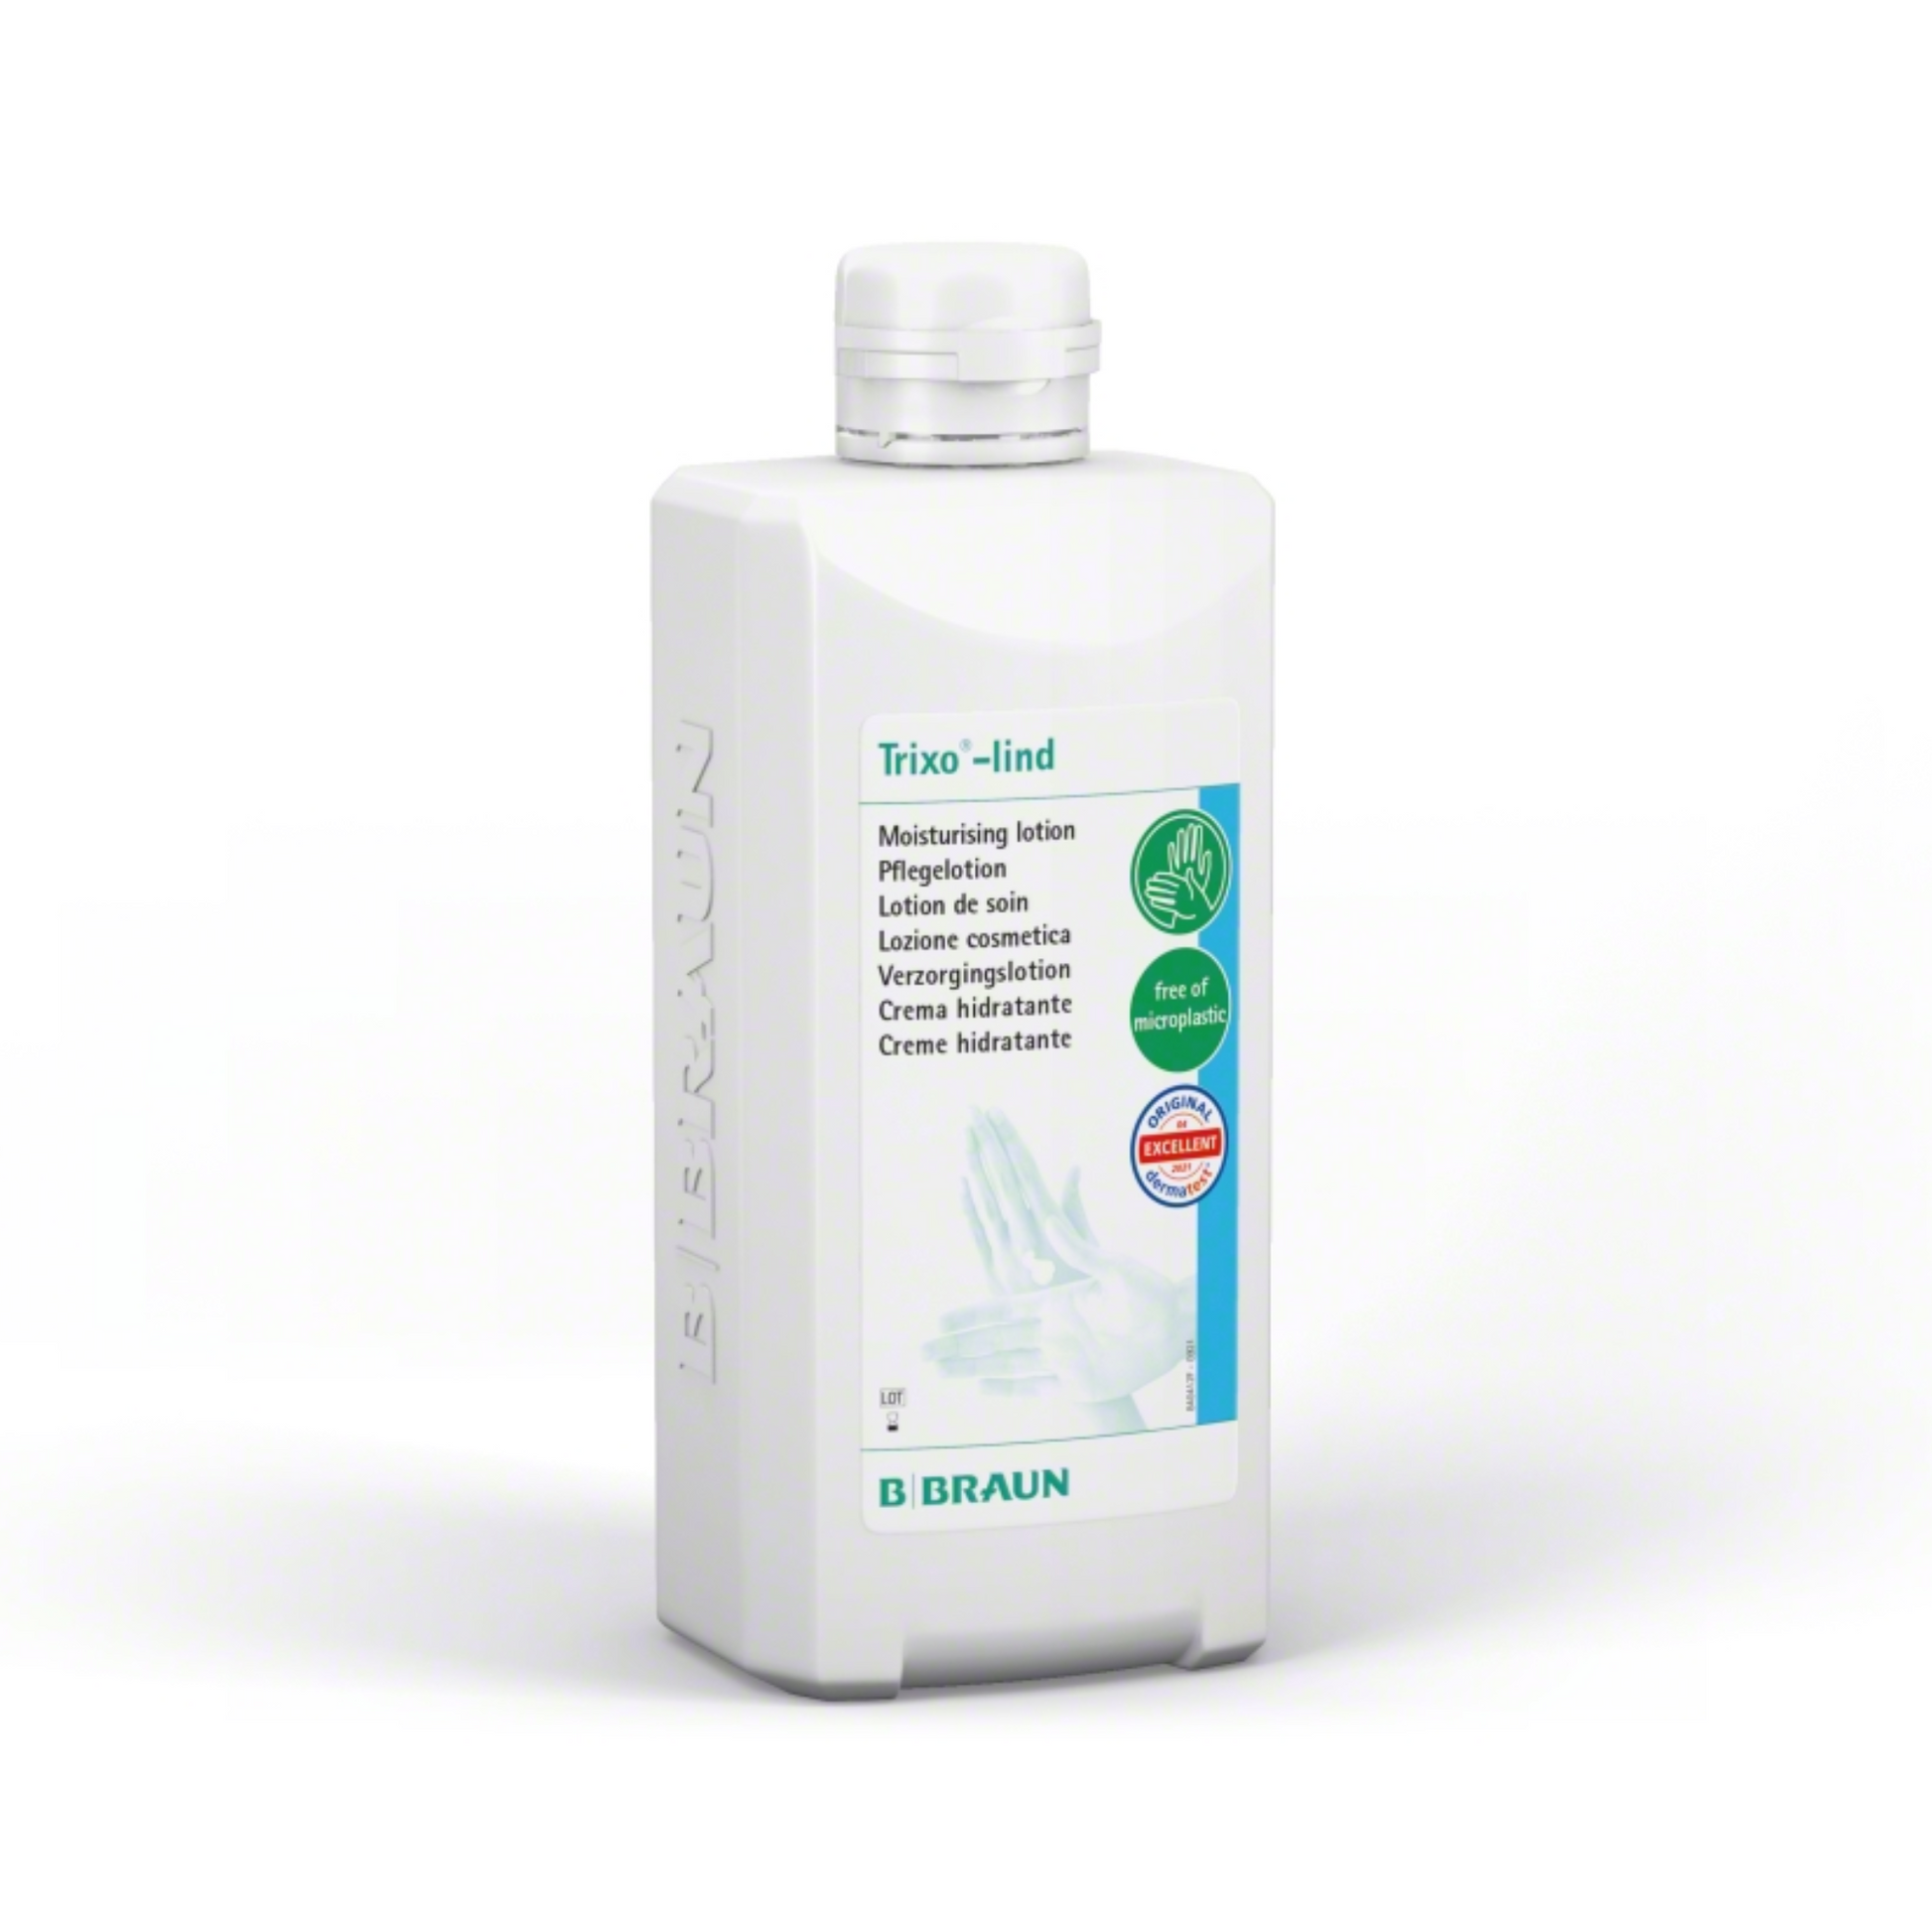 Weiße Flasche B. Braun Trixo®-lind Pflegelotion der B. Braun Melsungen AG mit grünem Etikett und Handabbildung. Das Produkt ist als parfümfrei und hautschützend gekennzeichnet.